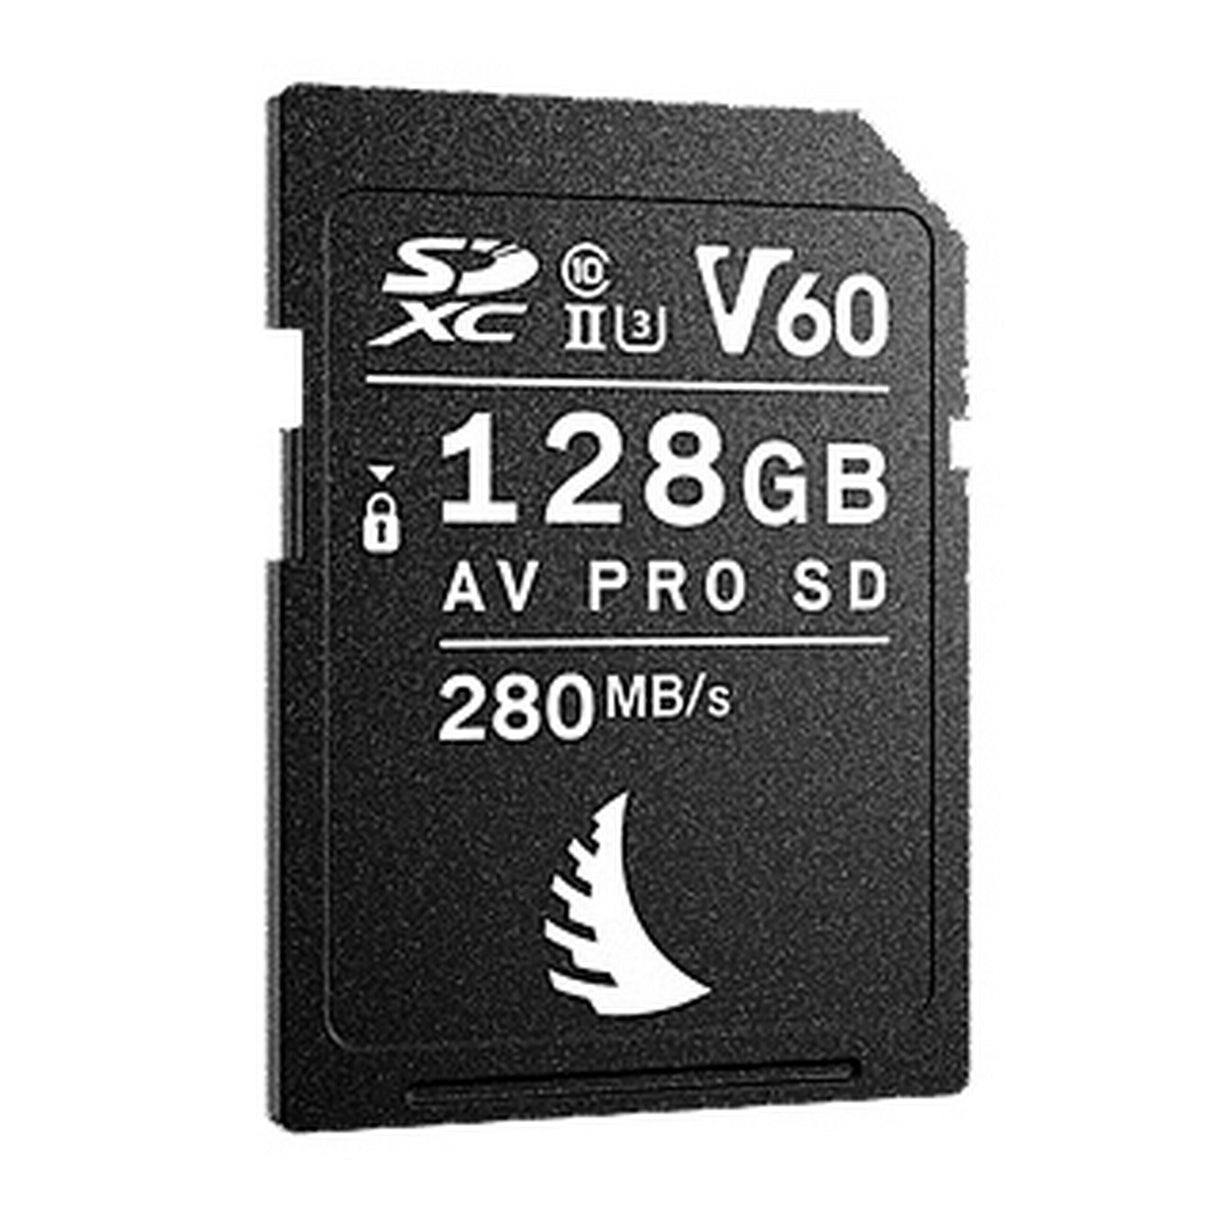 Angelbird AV PRO SD MK2 128GB V60 SDXC Memory Card, 1 Pack